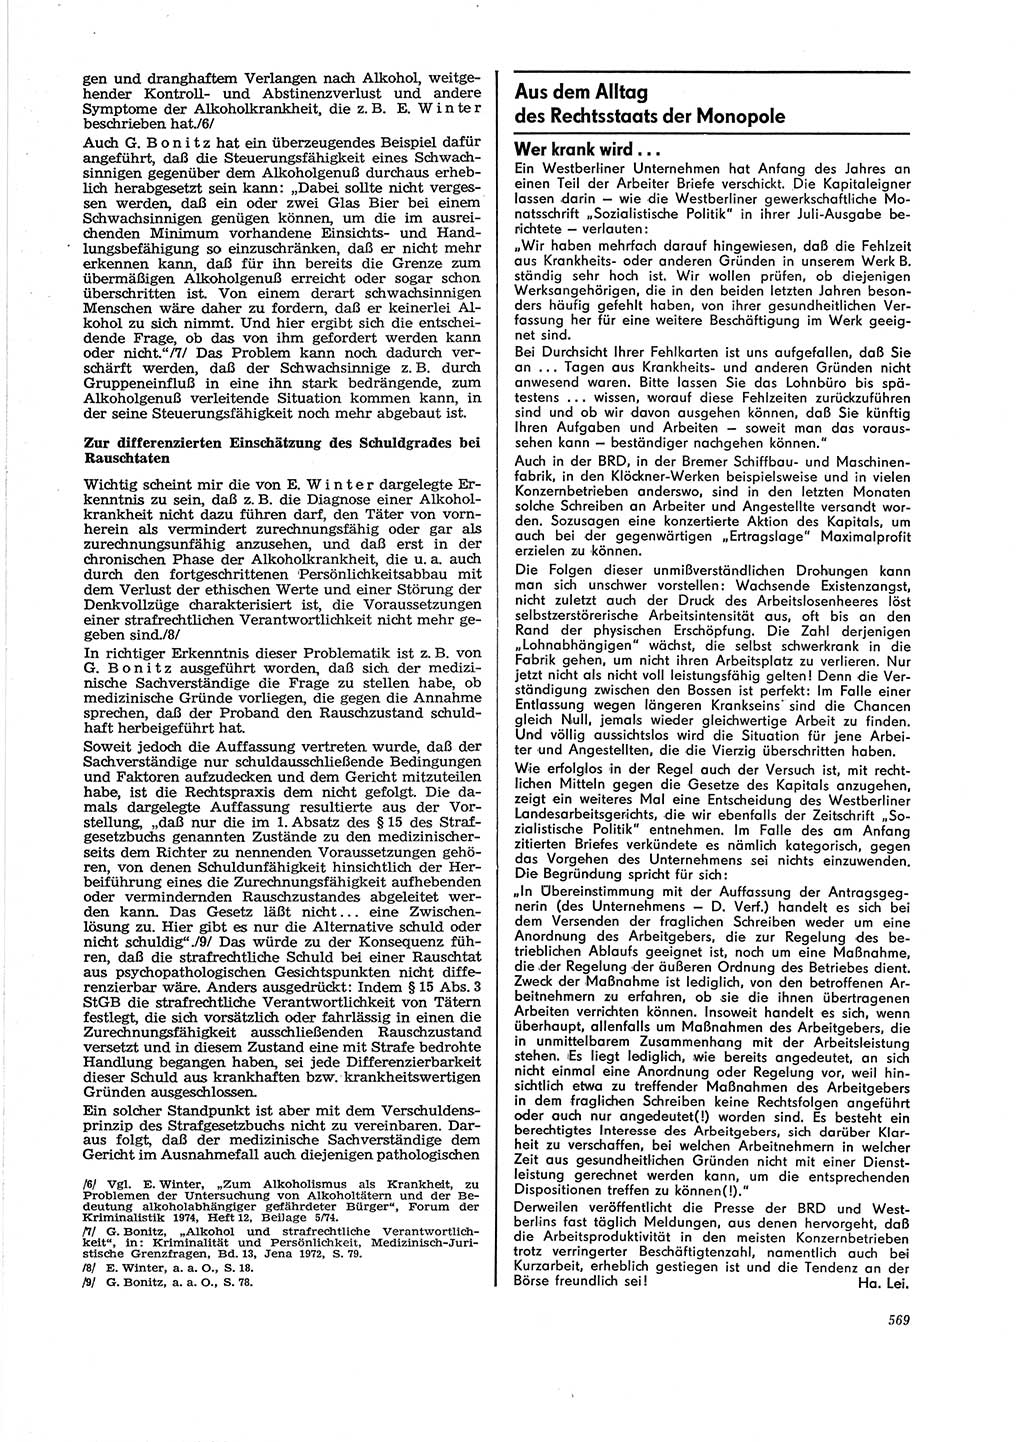 Neue Justiz (NJ), Zeitschrift für Recht und Rechtswissenschaft [Deutsche Demokratische Republik (DDR)], 29. Jahrgang 1975, Seite 569 (NJ DDR 1975, S. 569)